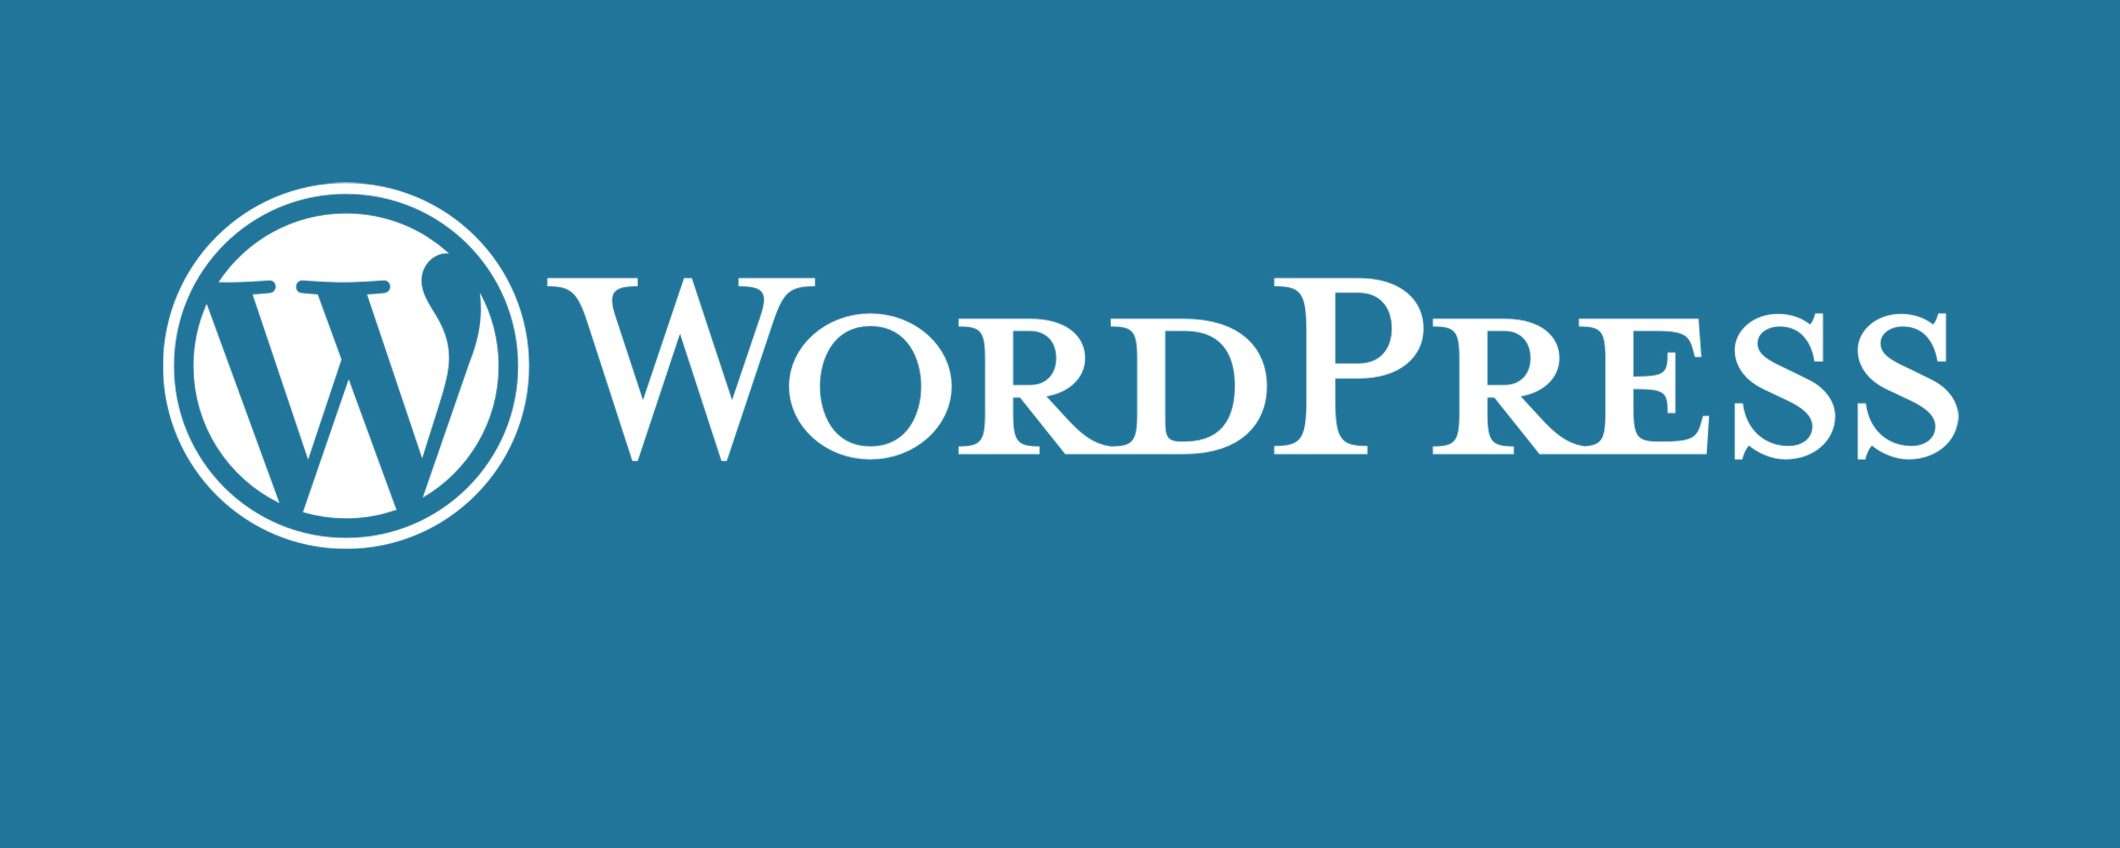 WordPress: siti compromessi con plugin vulnerabili